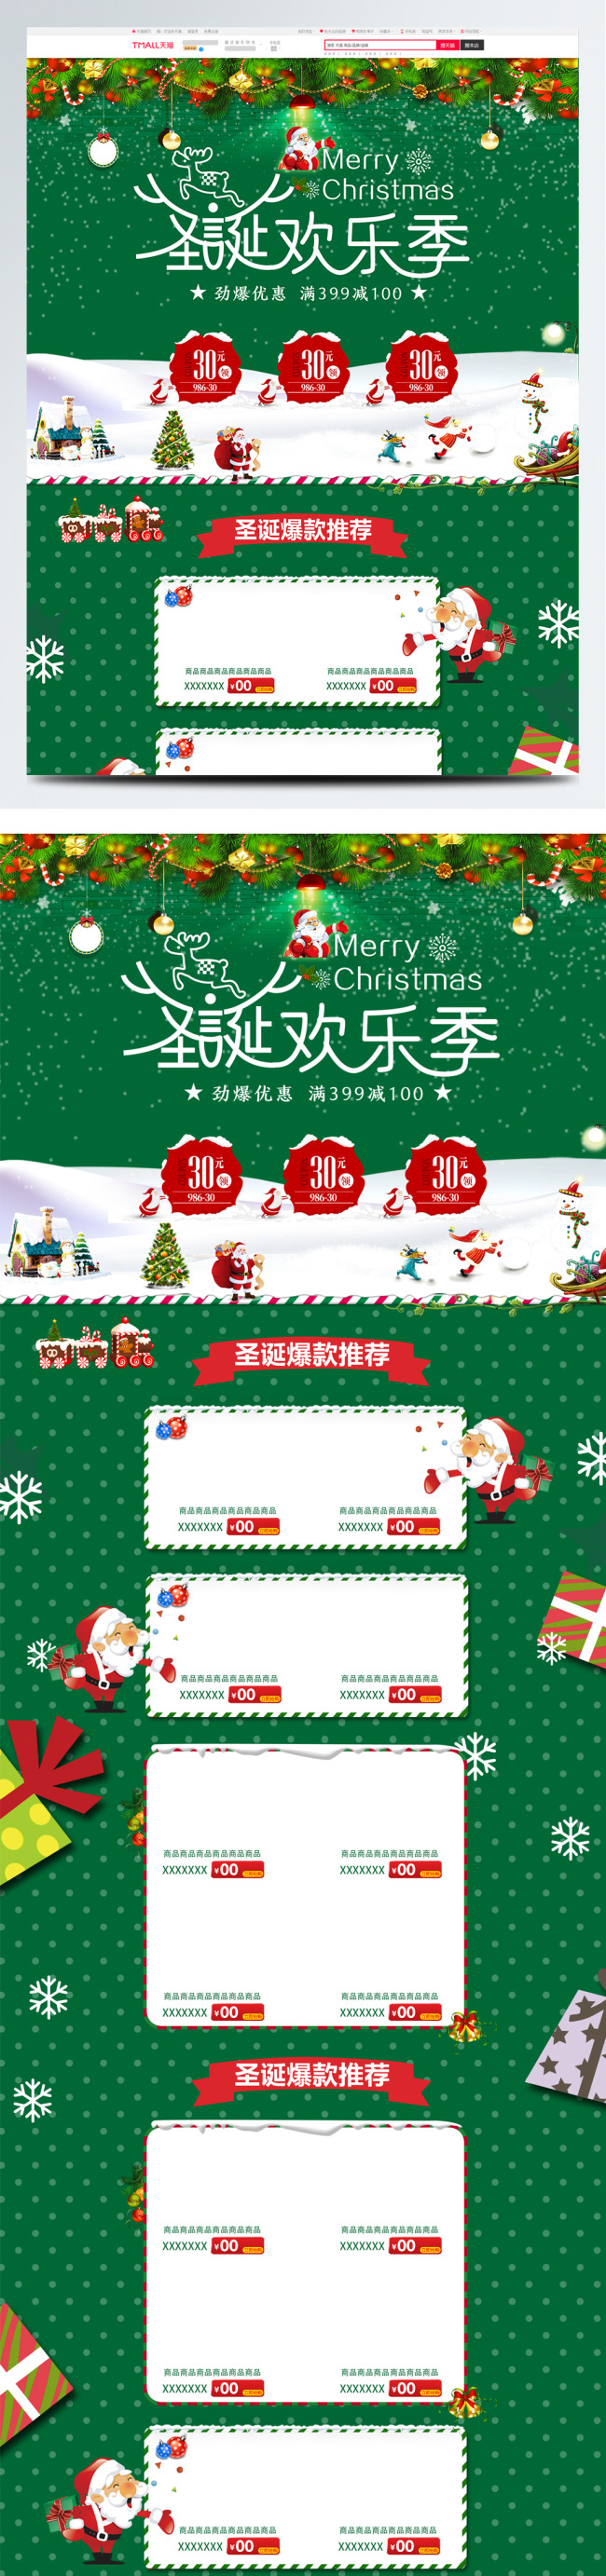 绿色简约化妆品圣诞欢乐季电商洗护首页模板图片